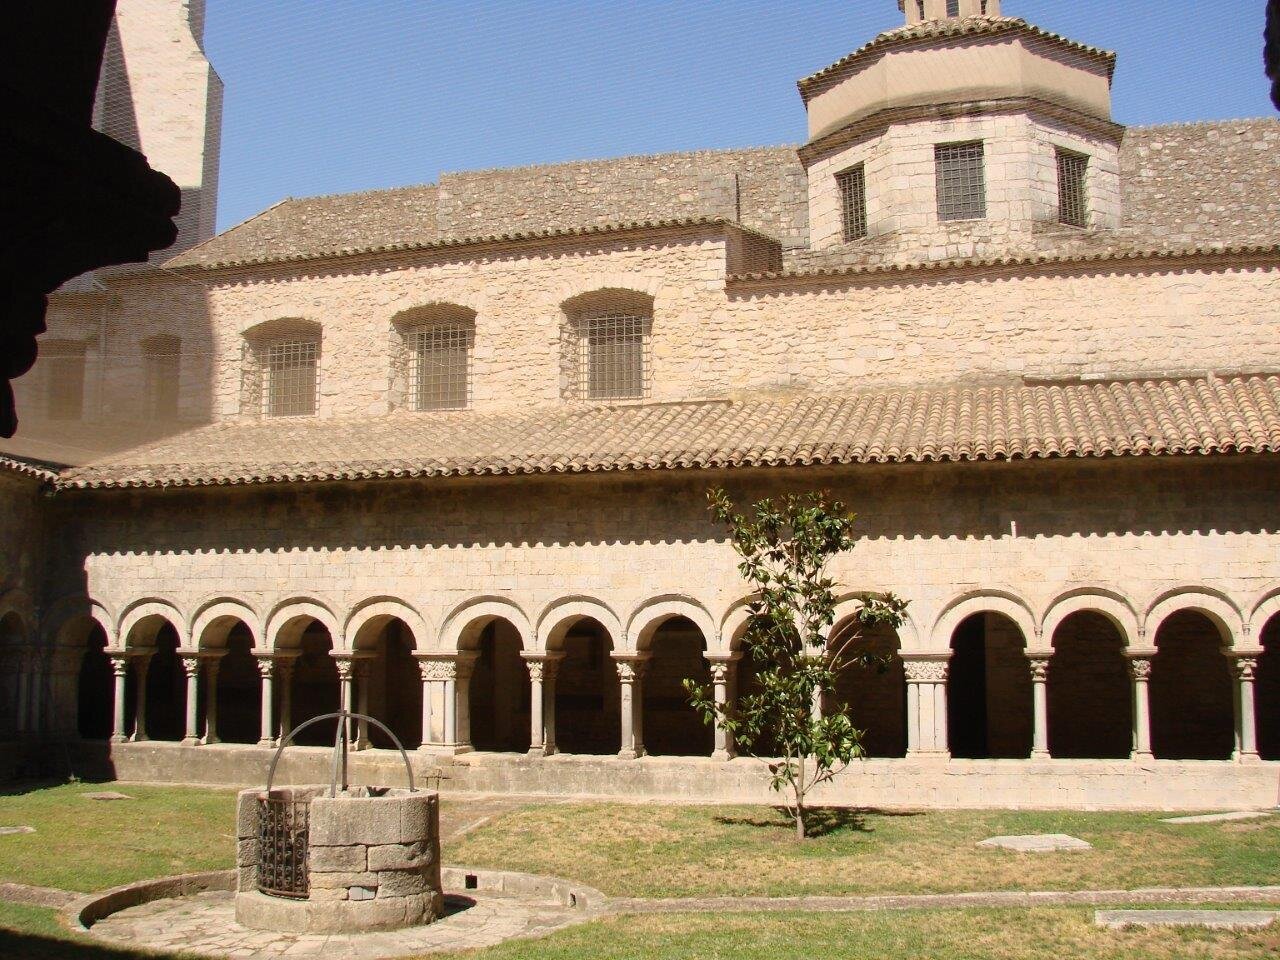 Монастырь Сан Педро, в котором размещен археологический музей